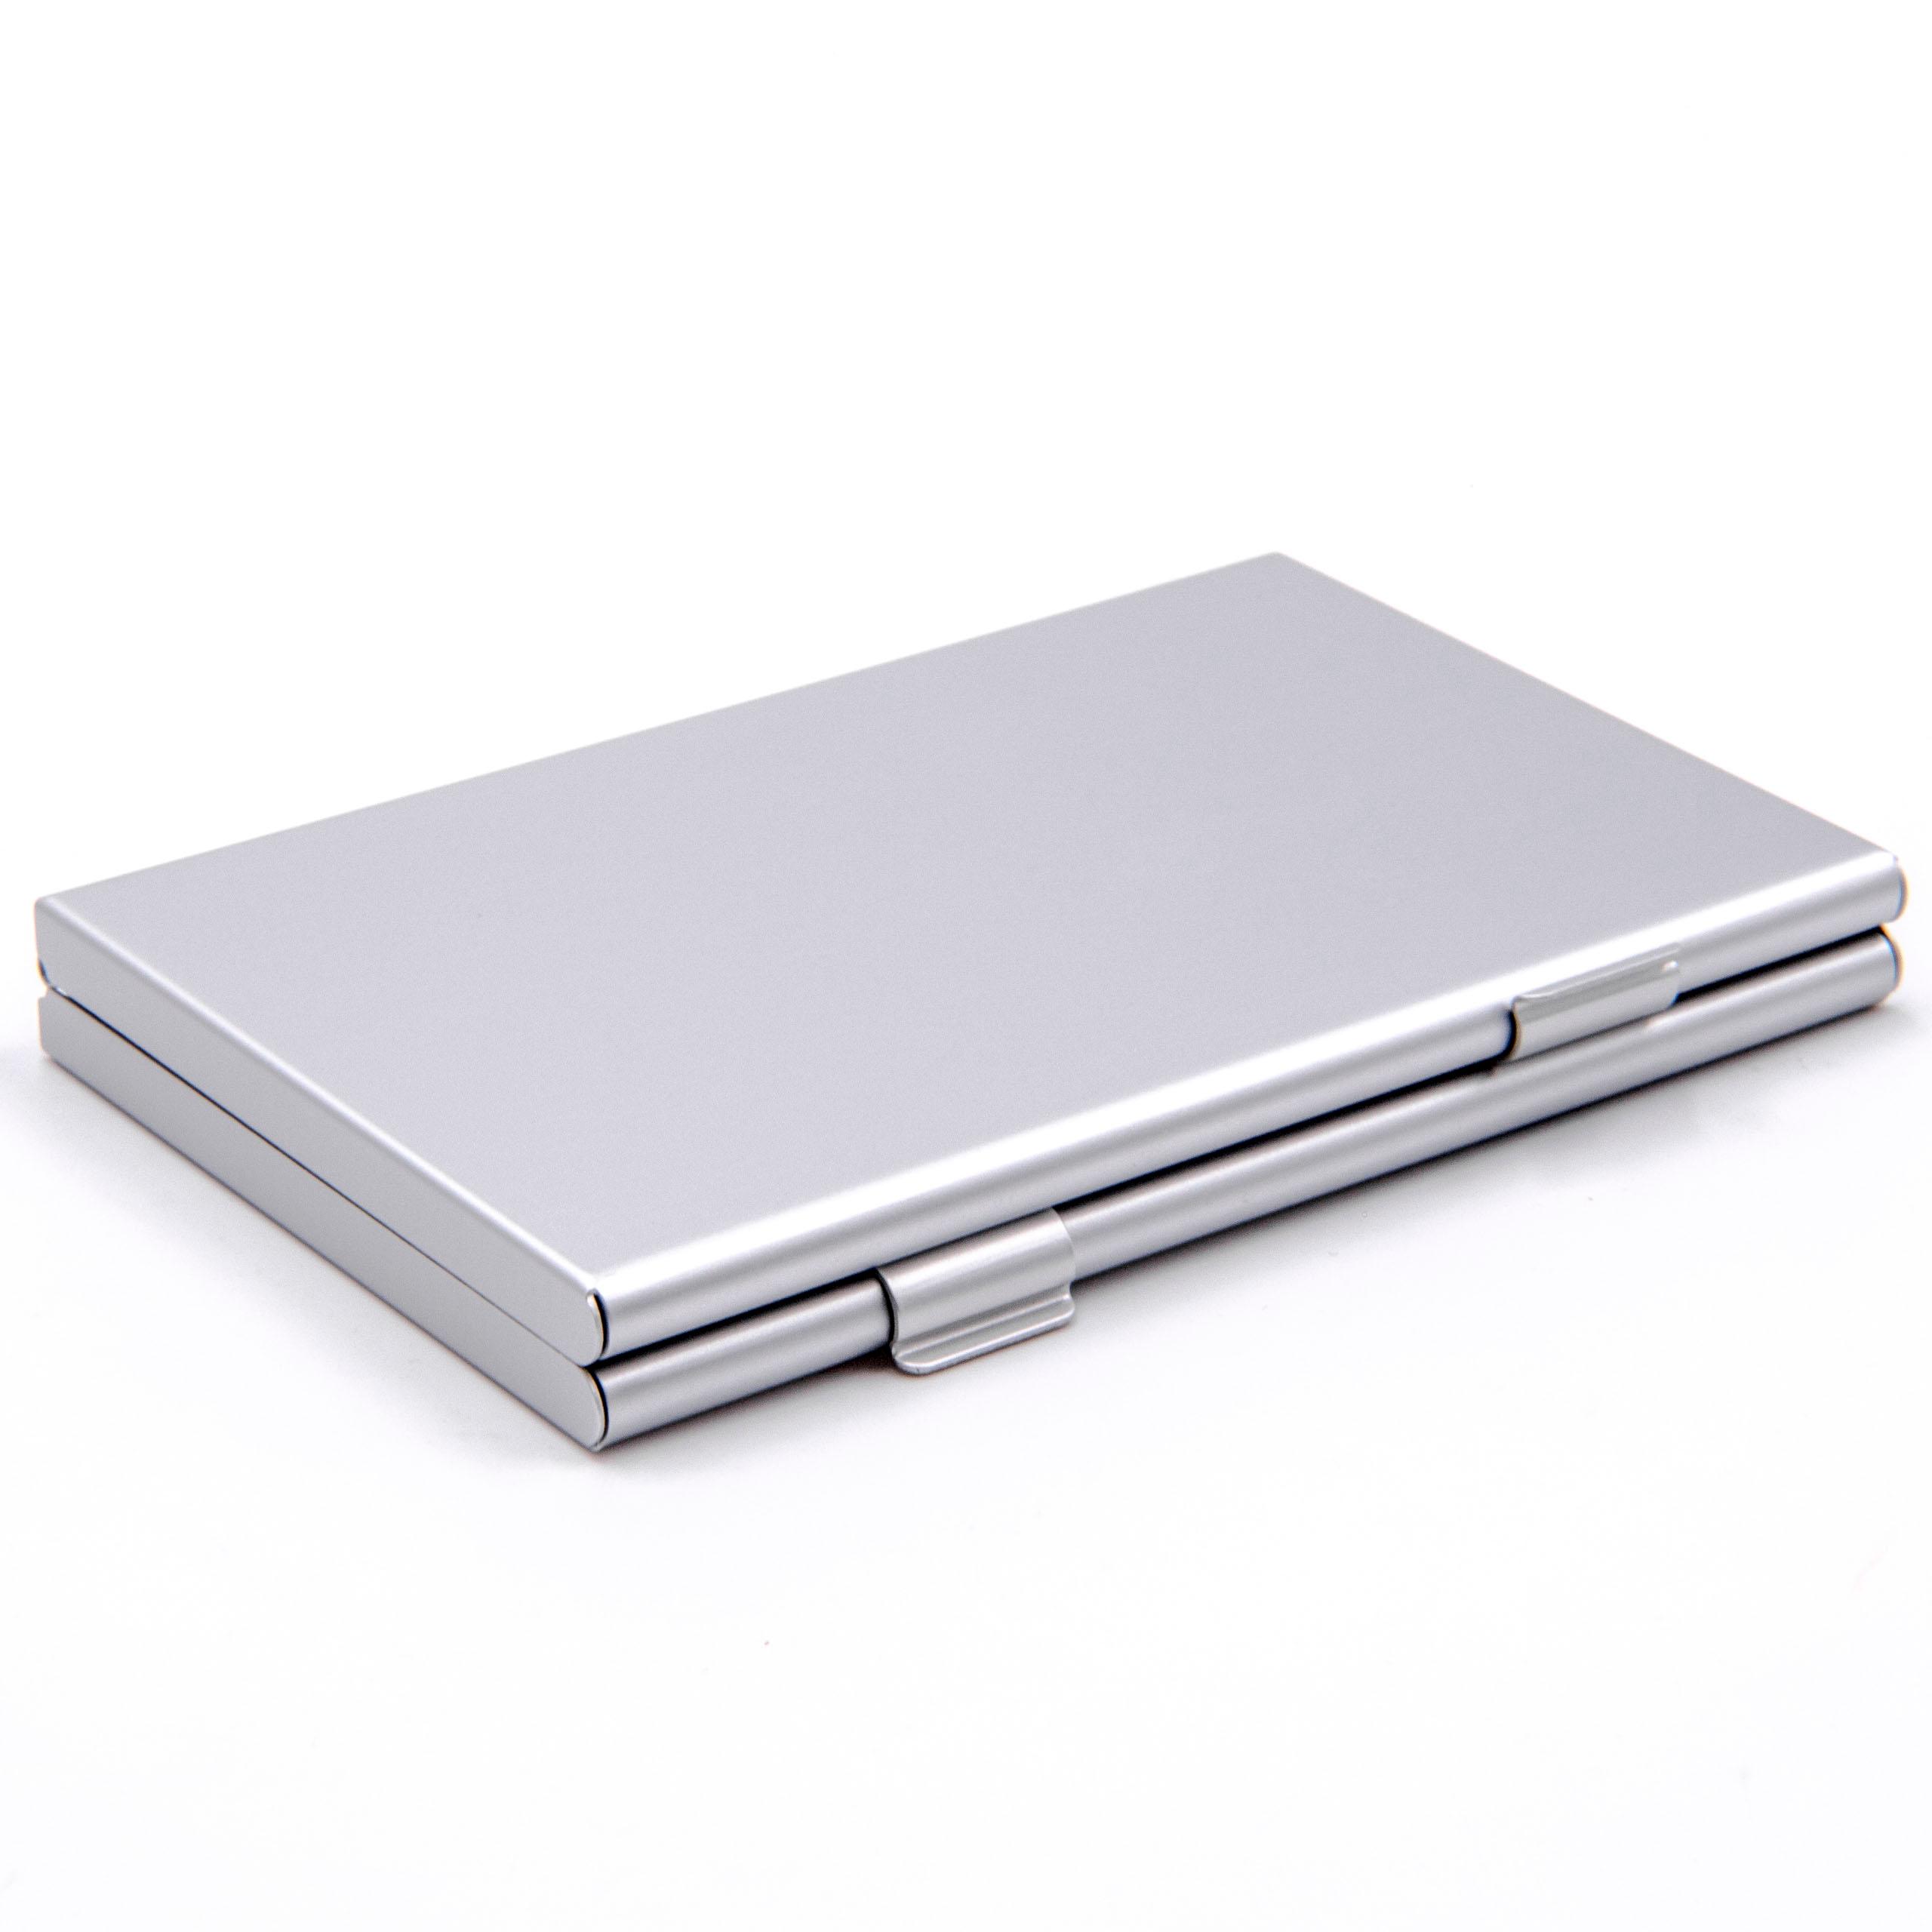 Etui pour cartes SIM 8x microSIM - Album, aluminium, argenté